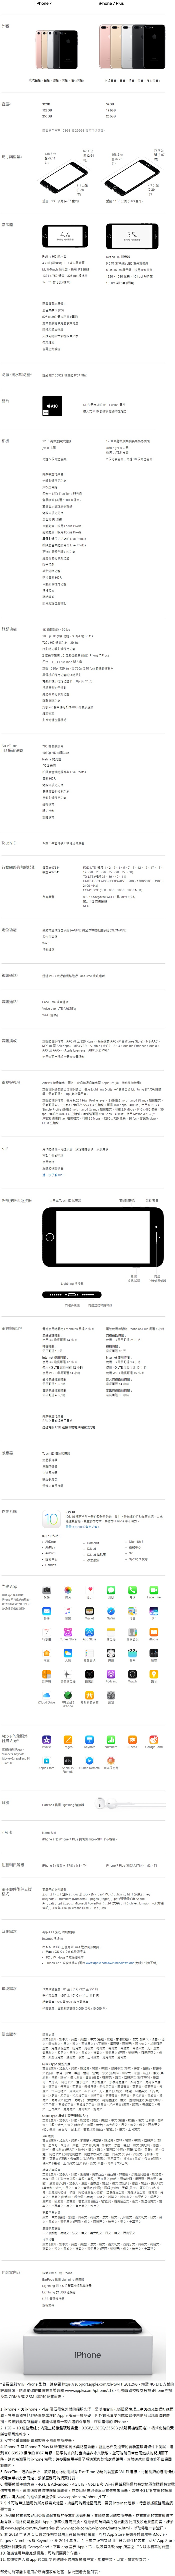 開箱推薦ptt 原廠公司貨 蘋果apple Iphone 7 Plus 5 5吋 32g 4g Lte 智慧型手機iphone7 I7 A10 Retina 融四歲拍廠拍出清特賣會